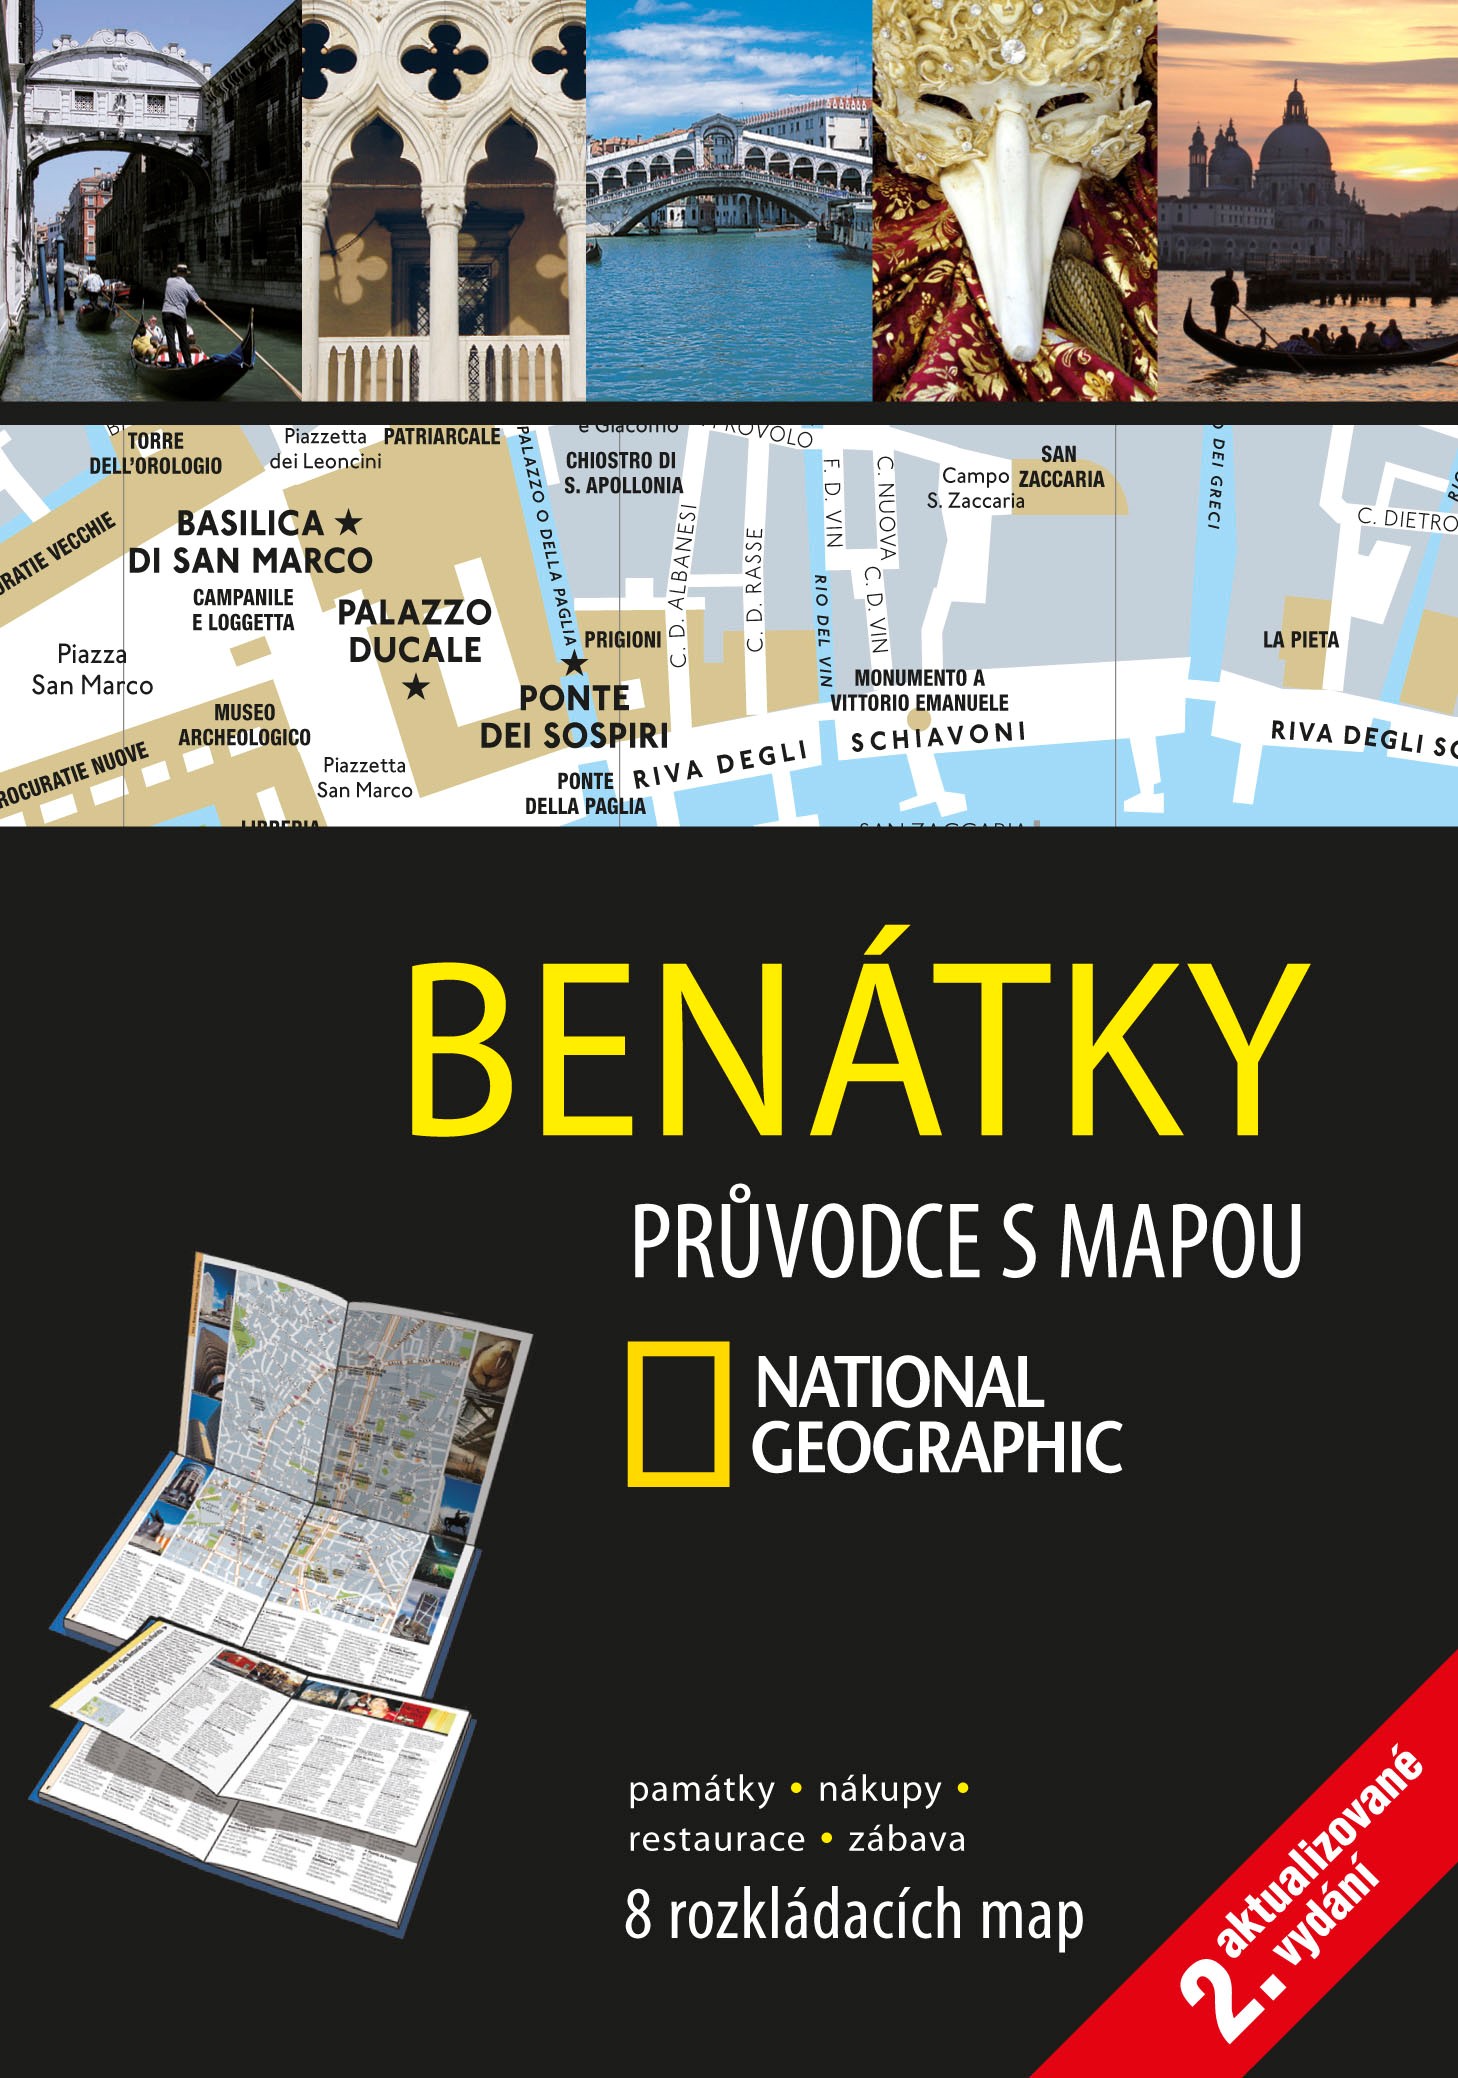 BENÁTKY PRŮVODCE S MAPOU NATIONAL GEOGRAPHIC